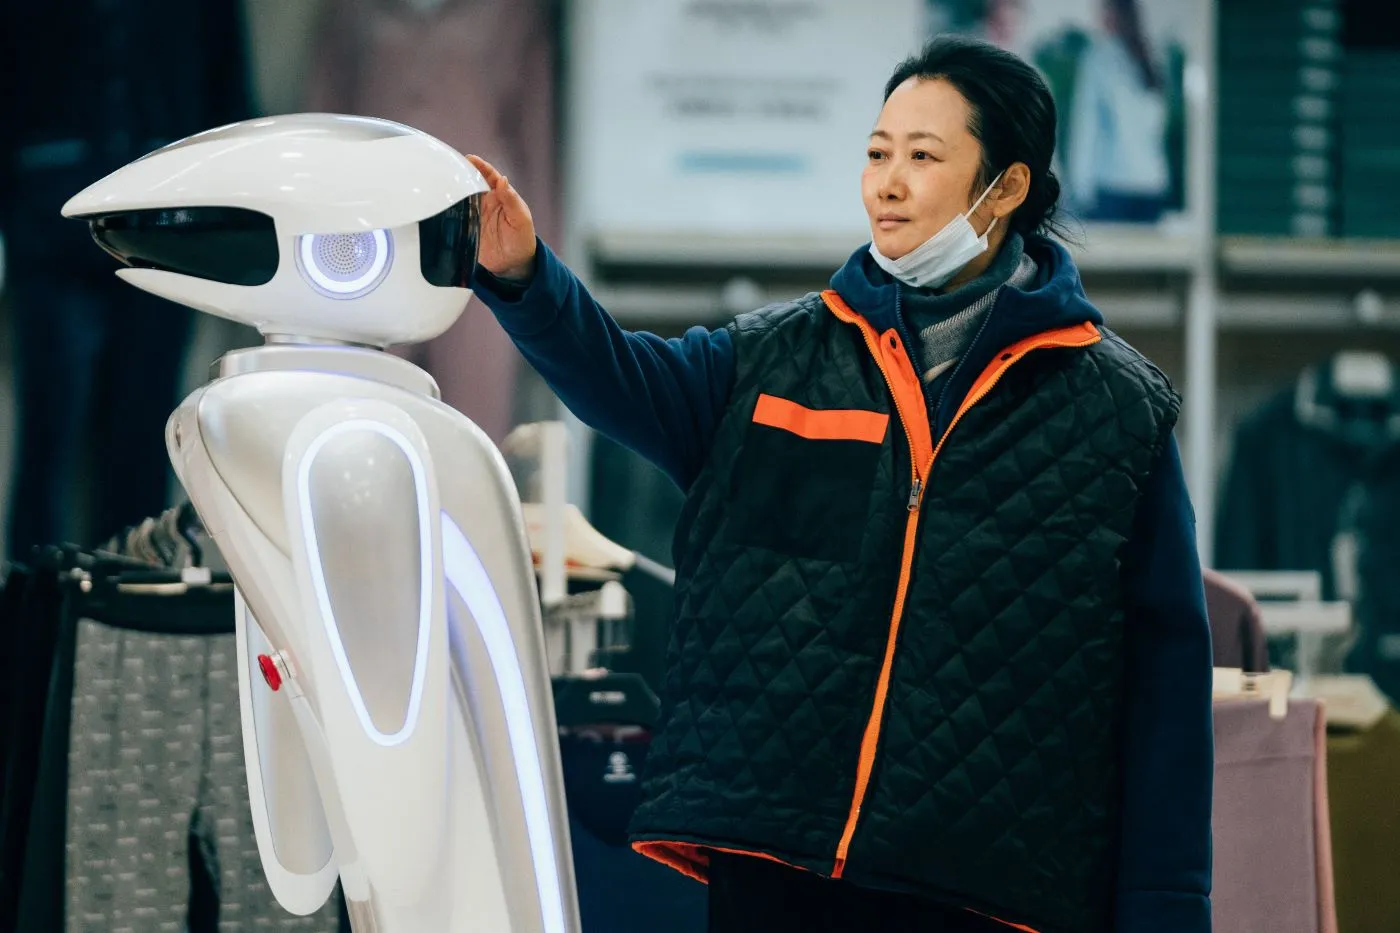 eine Frau in dunkler Jacke mit hellorangen Reißverschluss legt ihre Hand auf einen links im Bild stehenden, weißen, futuristischen Roboter